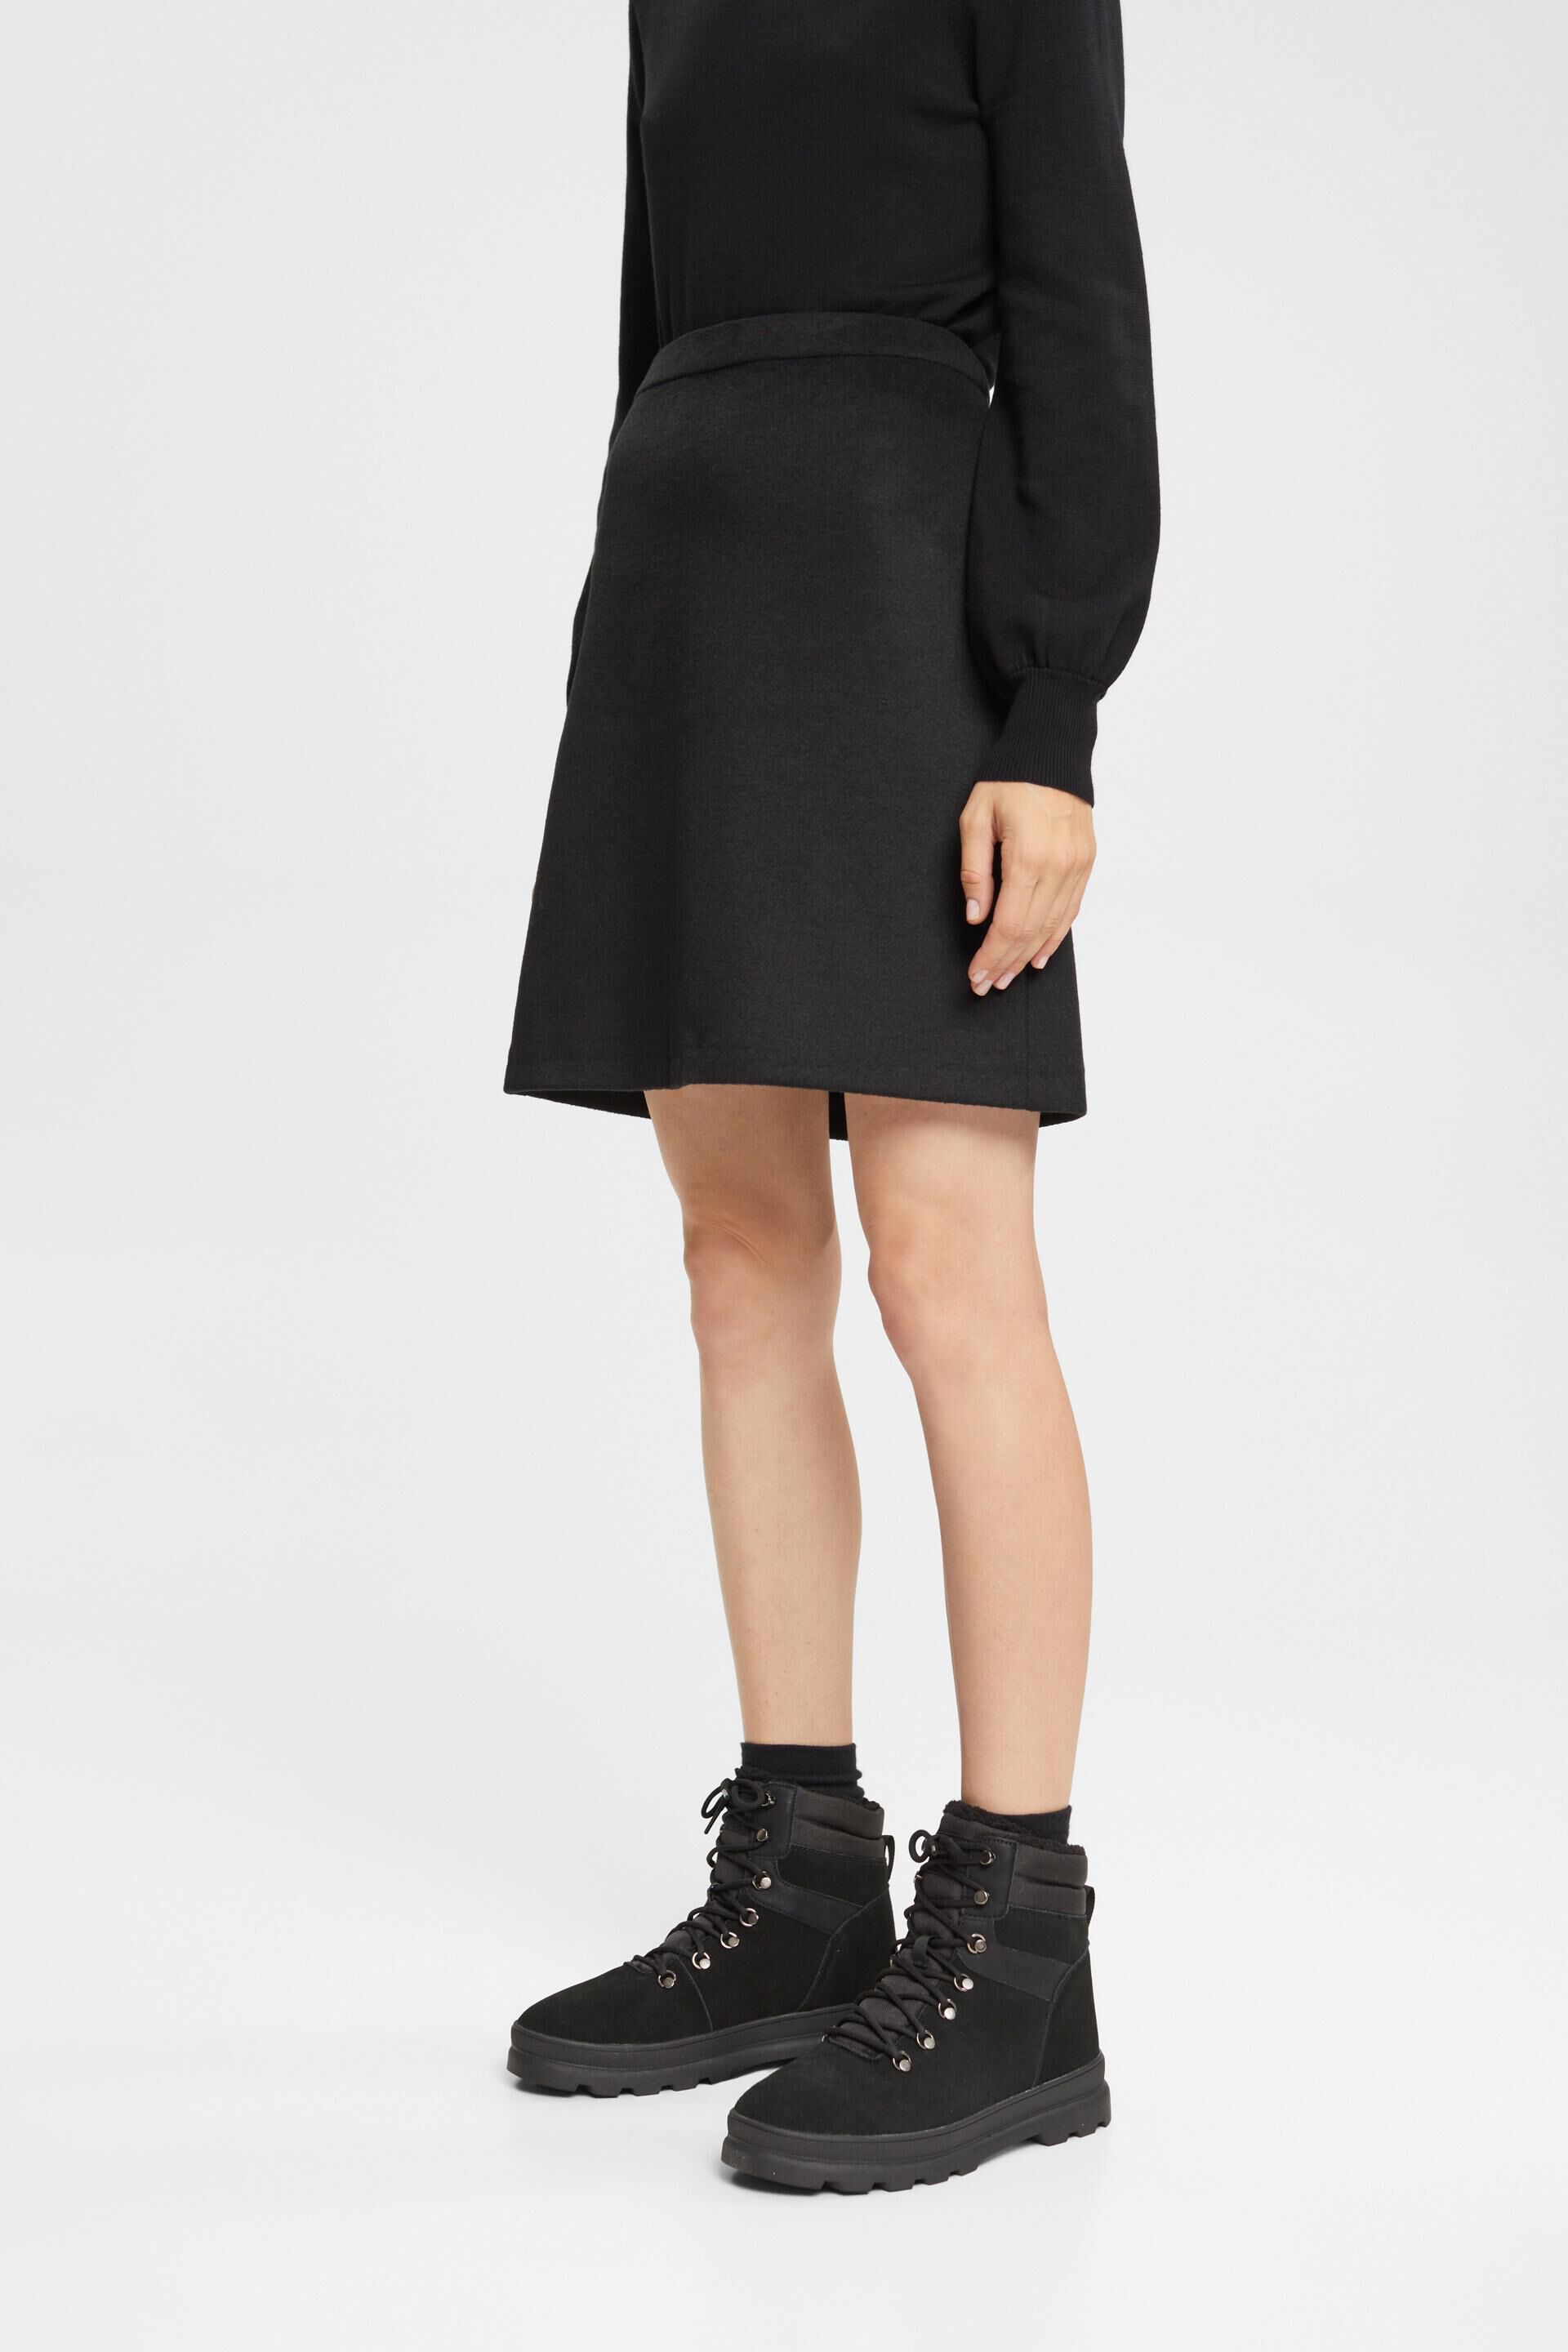 Esprit Damen Wool blend mini skirt